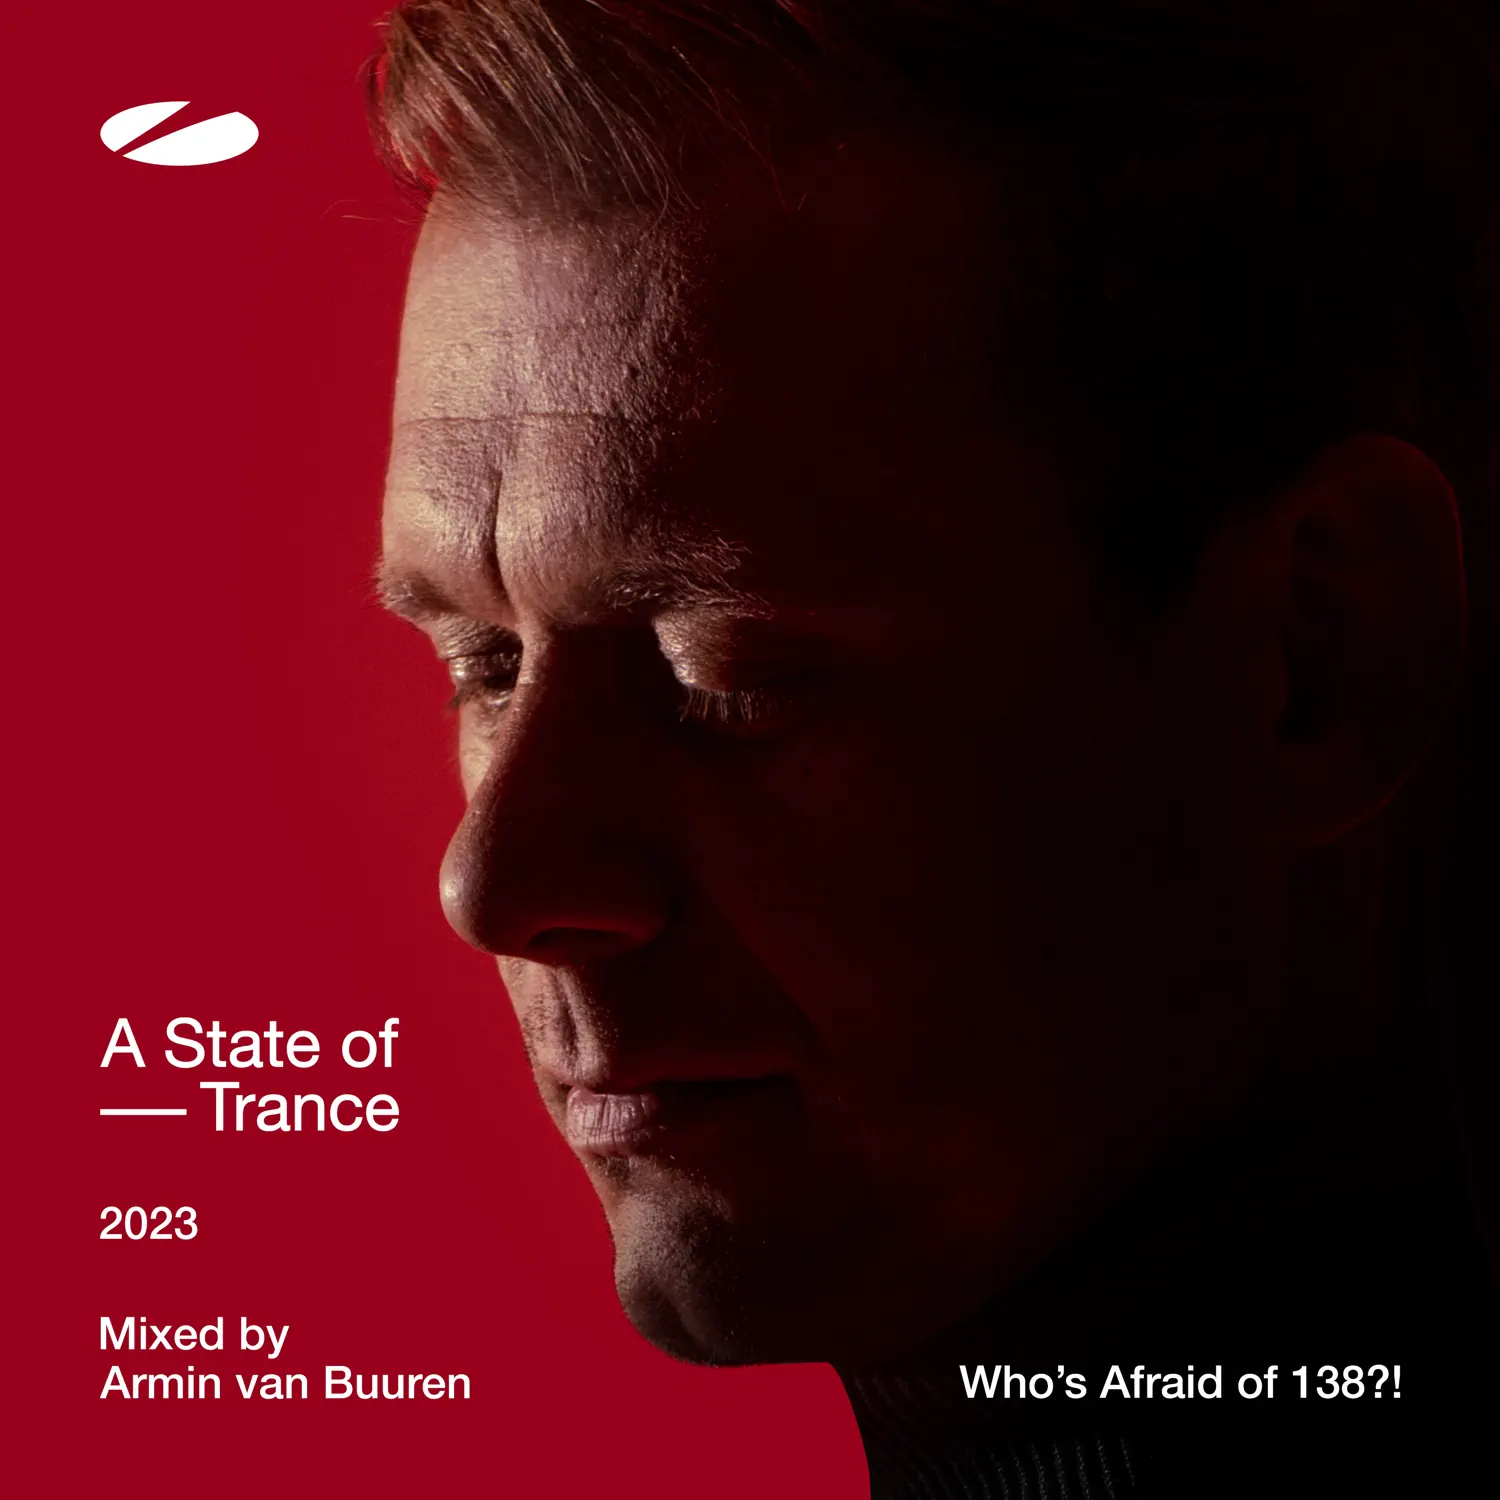 Armin van Buuren - A State of Trance 2023 (DJ Mix) [Mixed by Armin Van Buuren] (2023) [iTunes Plus AAC M4A]-新房子